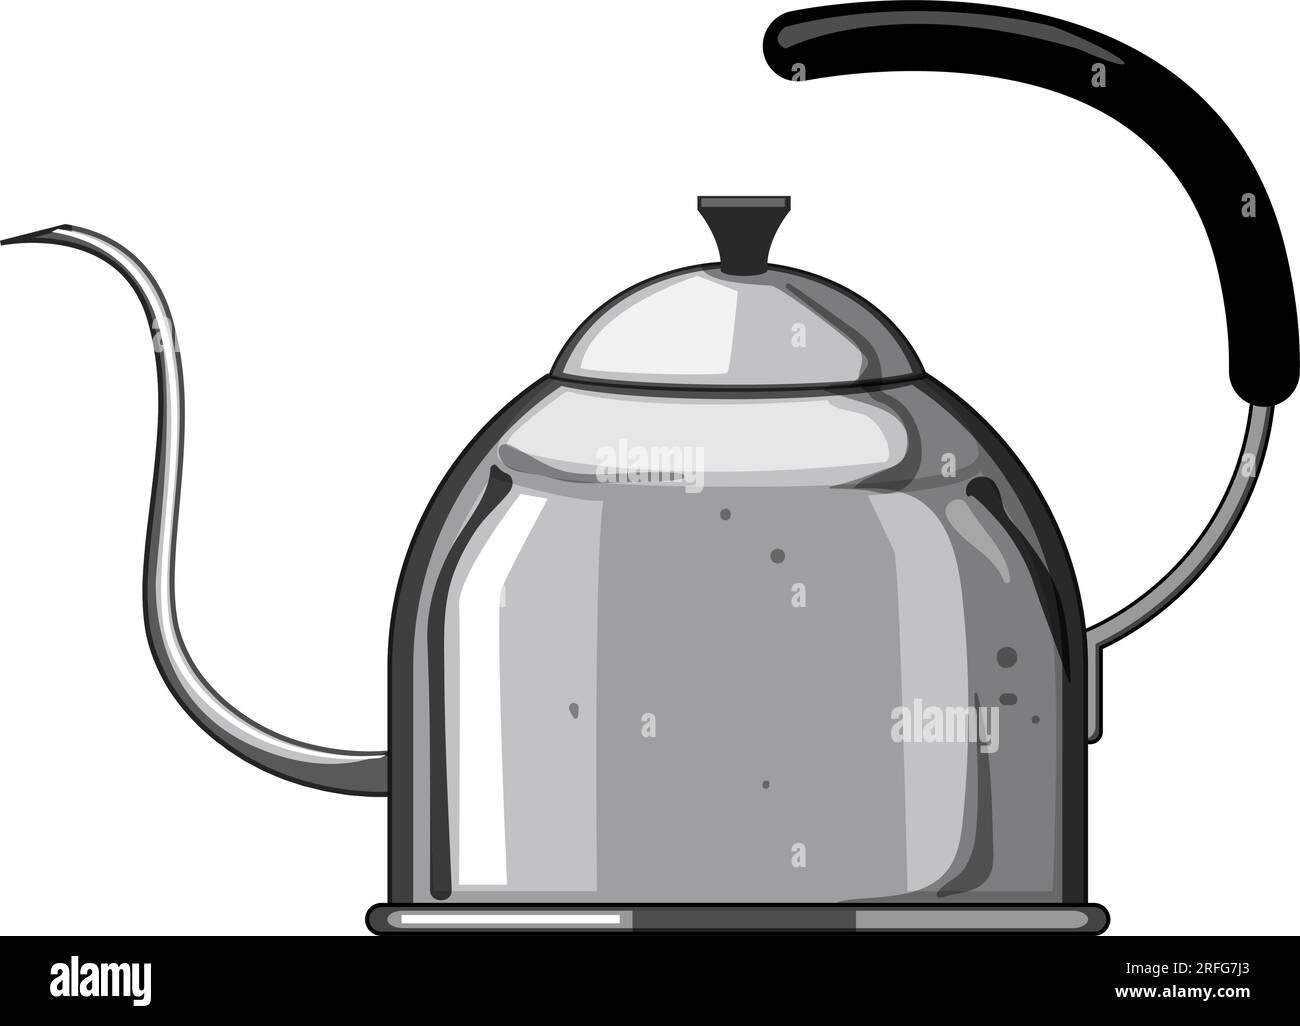 teapot steel drip kettle cartoon vector illustration Stock Vector